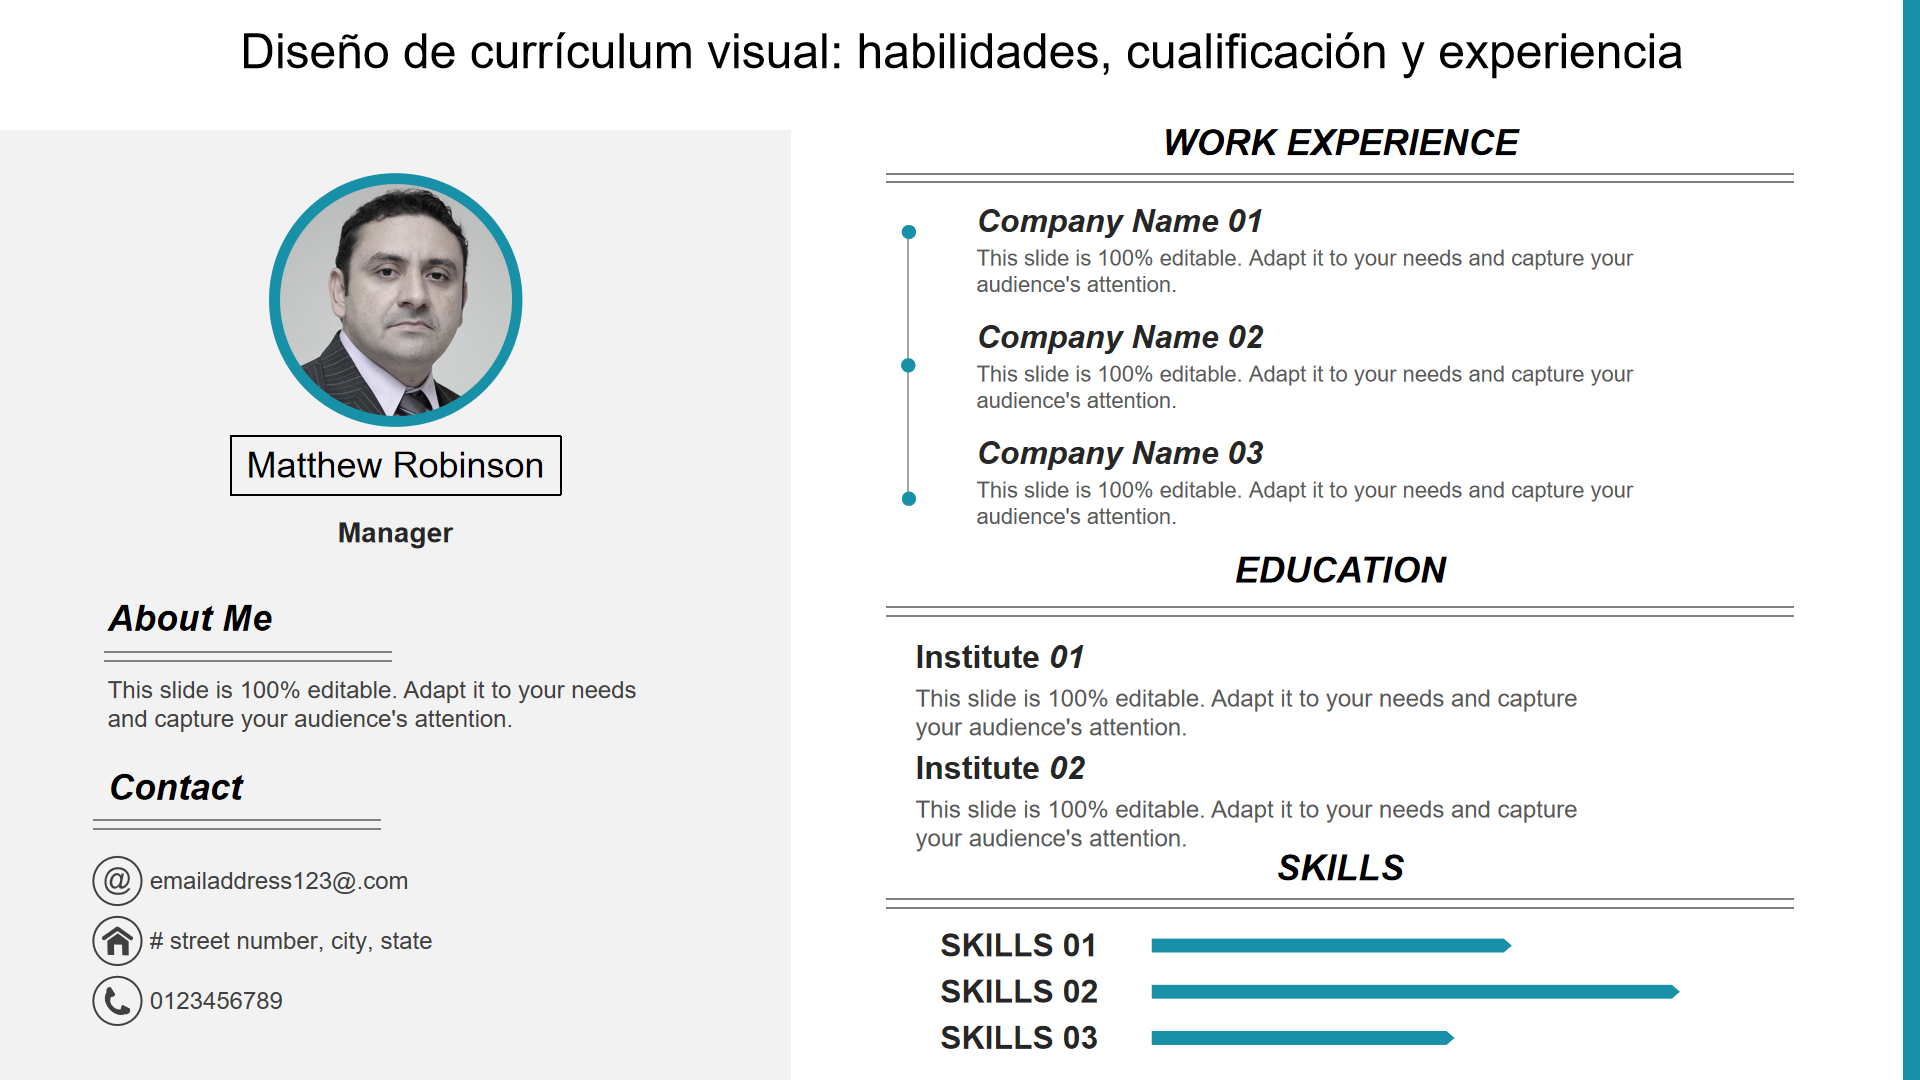 Diseño de currículum visual habilidades cualificación y experiencia